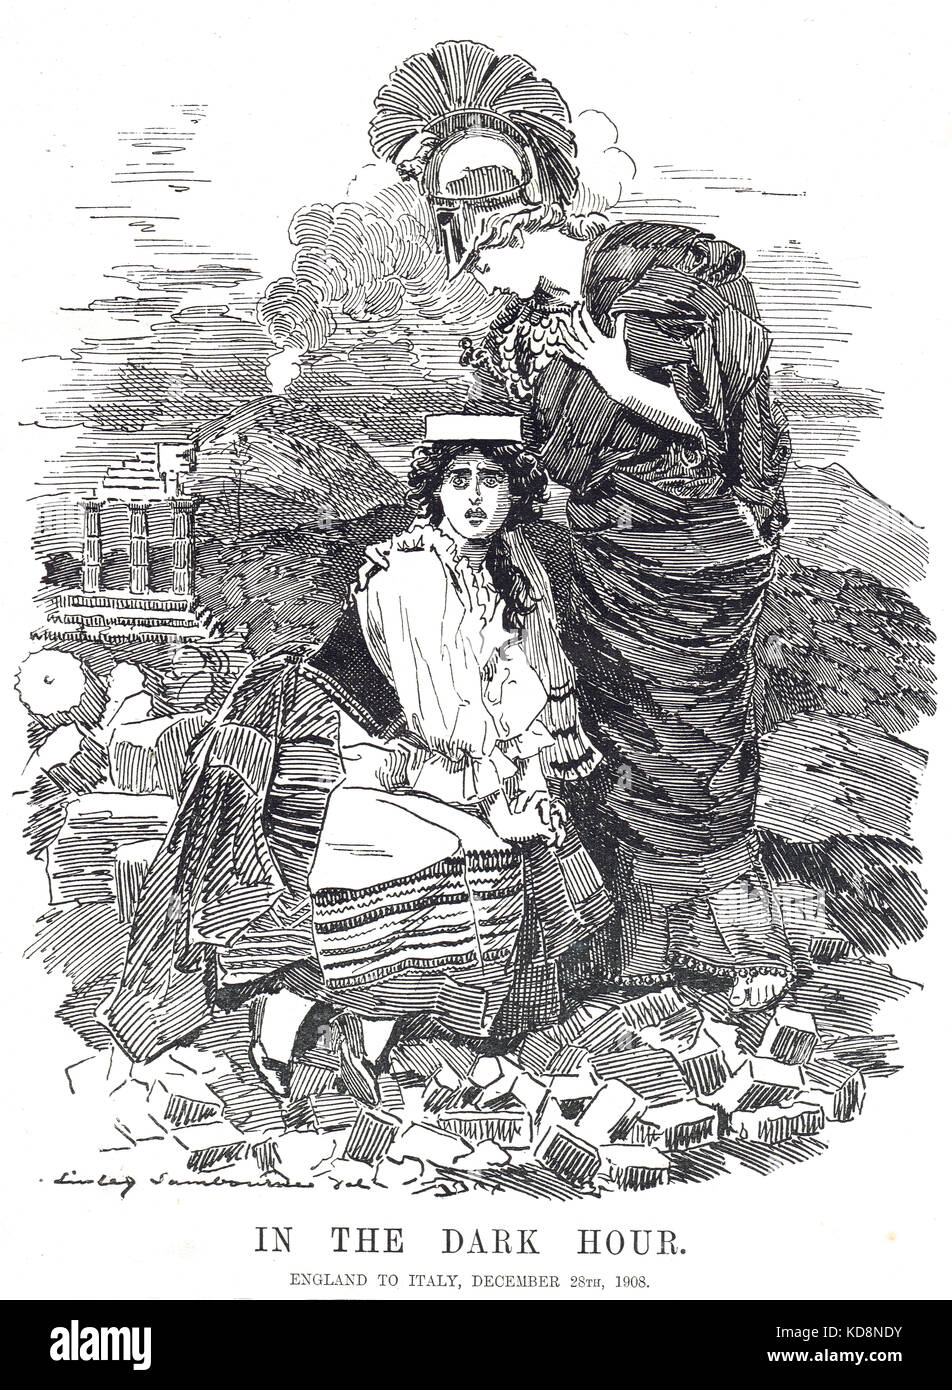 Das Erdbeben von Messina, 28. Dezember 1908. England bietet Italien Hilfe an. Punch Cartoon vom 6. Januar 1909 Stockfoto